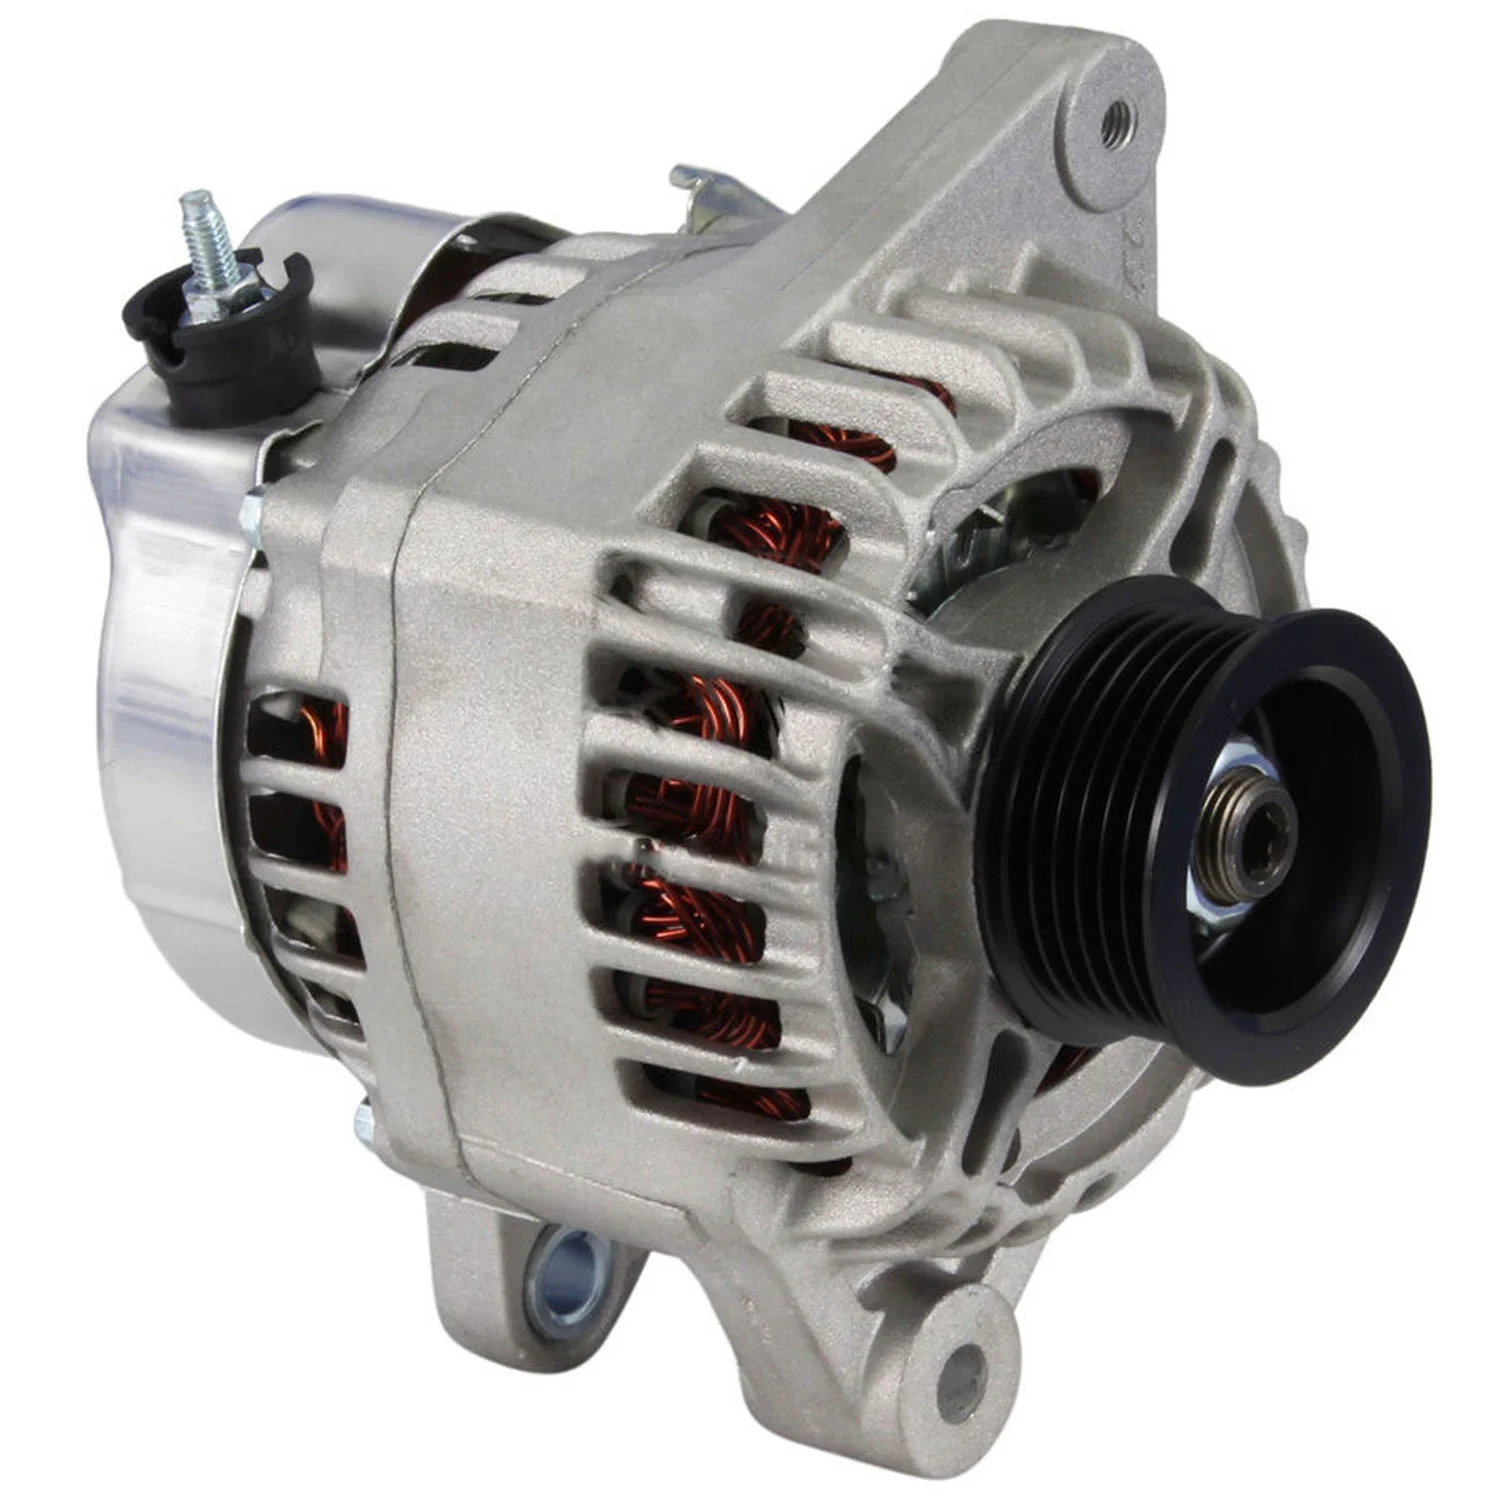 

Auto Dynamo Alternator Generator For BSH Delco DENS TYT VLEO 0986049211 114006 CAL40163 CAL40163ES CAL40163GS CAL40163OS